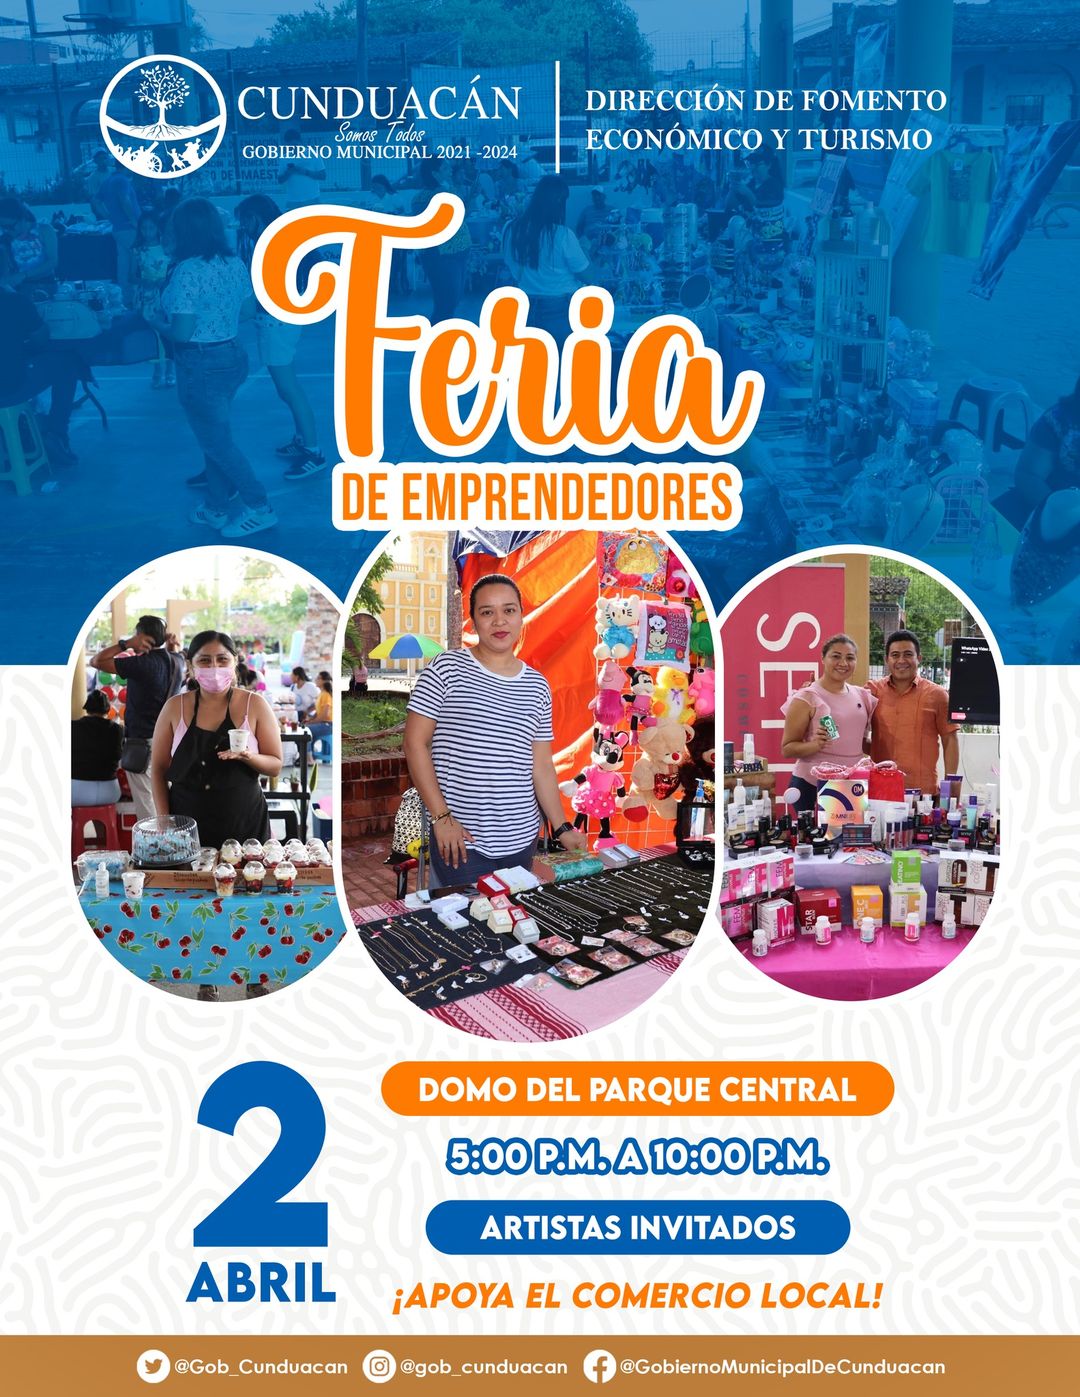 Feria de emprendedores Cunduacán